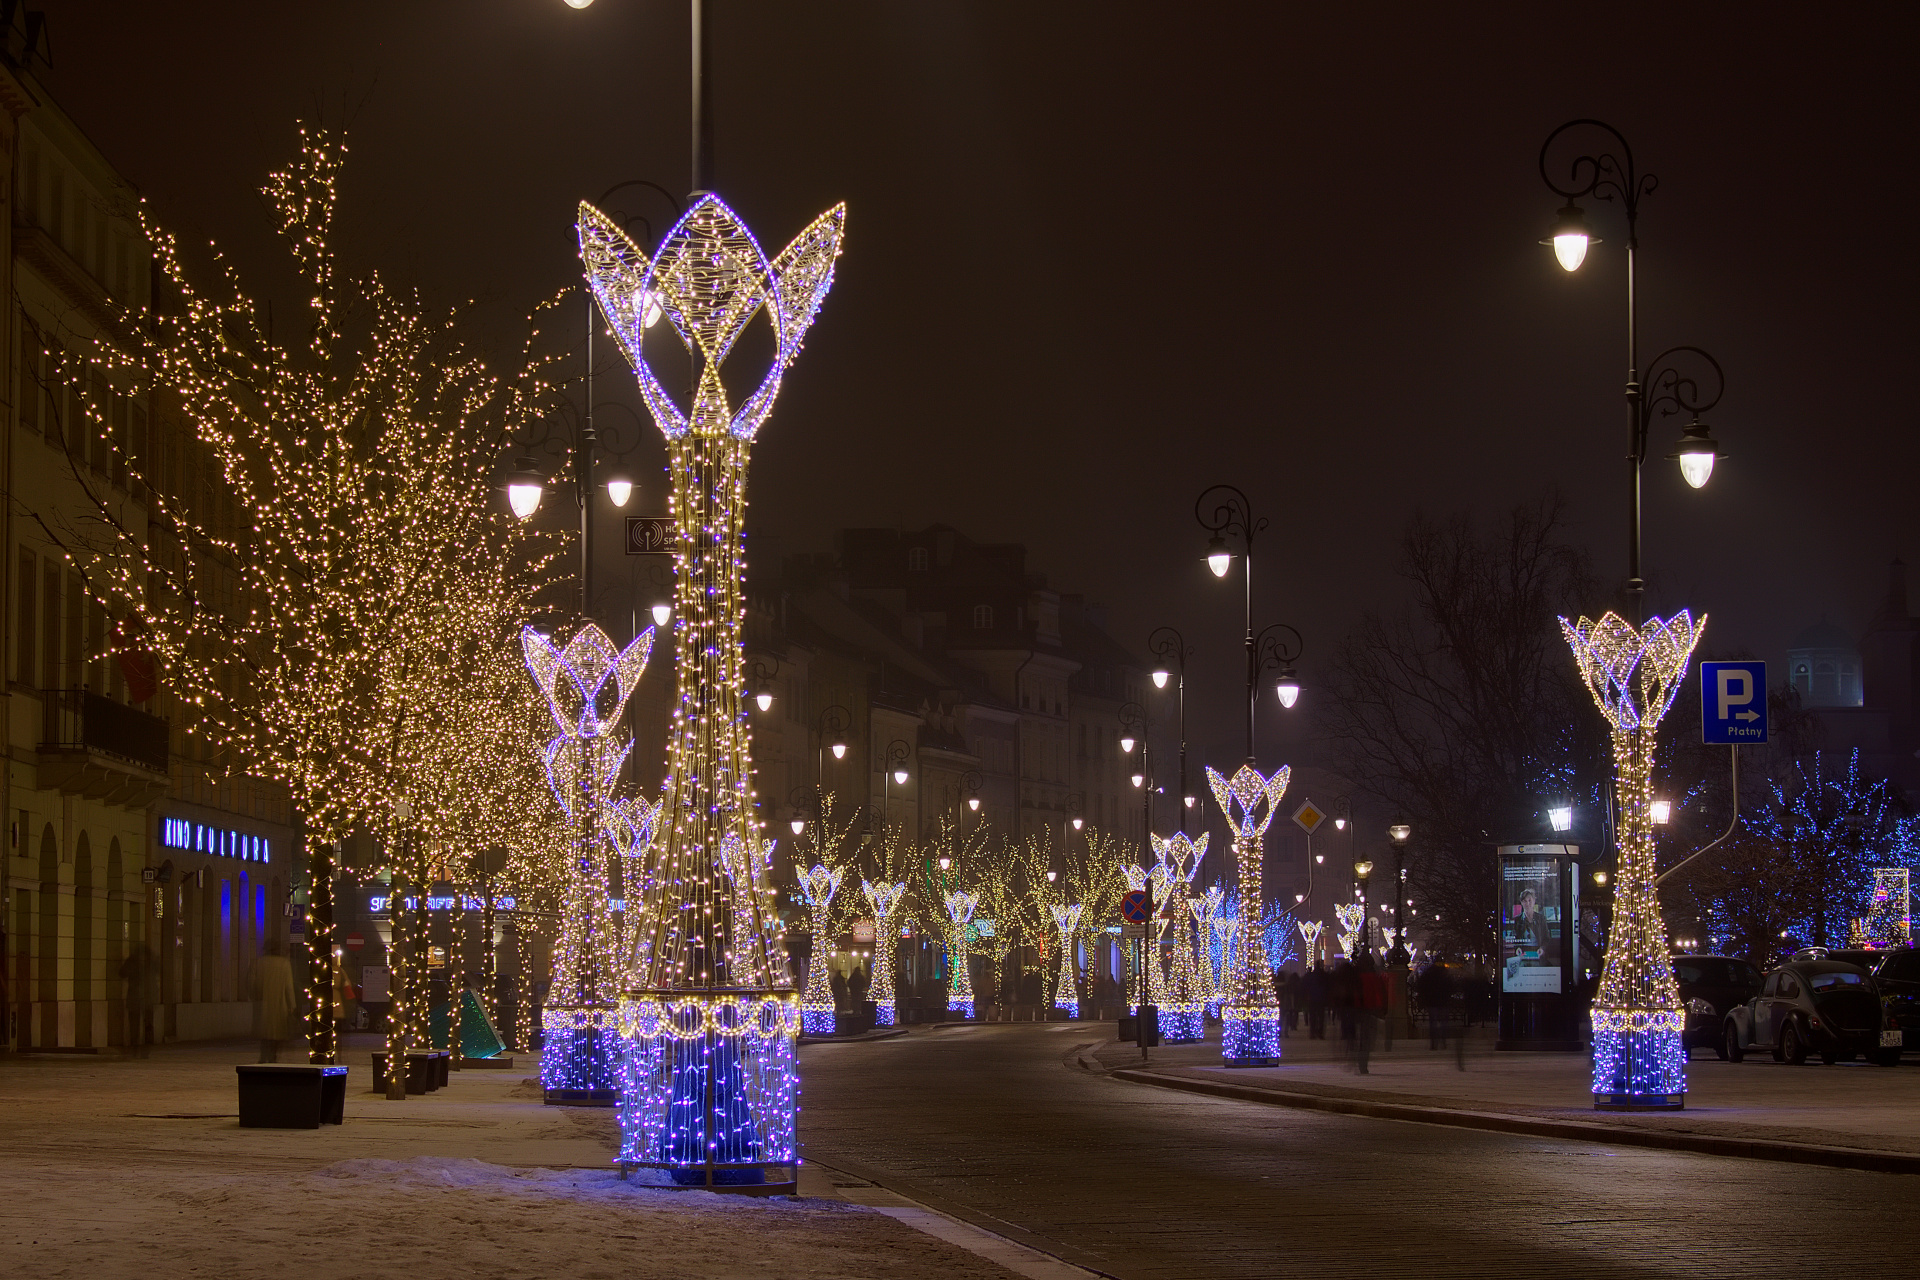 Krakowskie Przedmieście (Warsaw » Christmas Illumination)